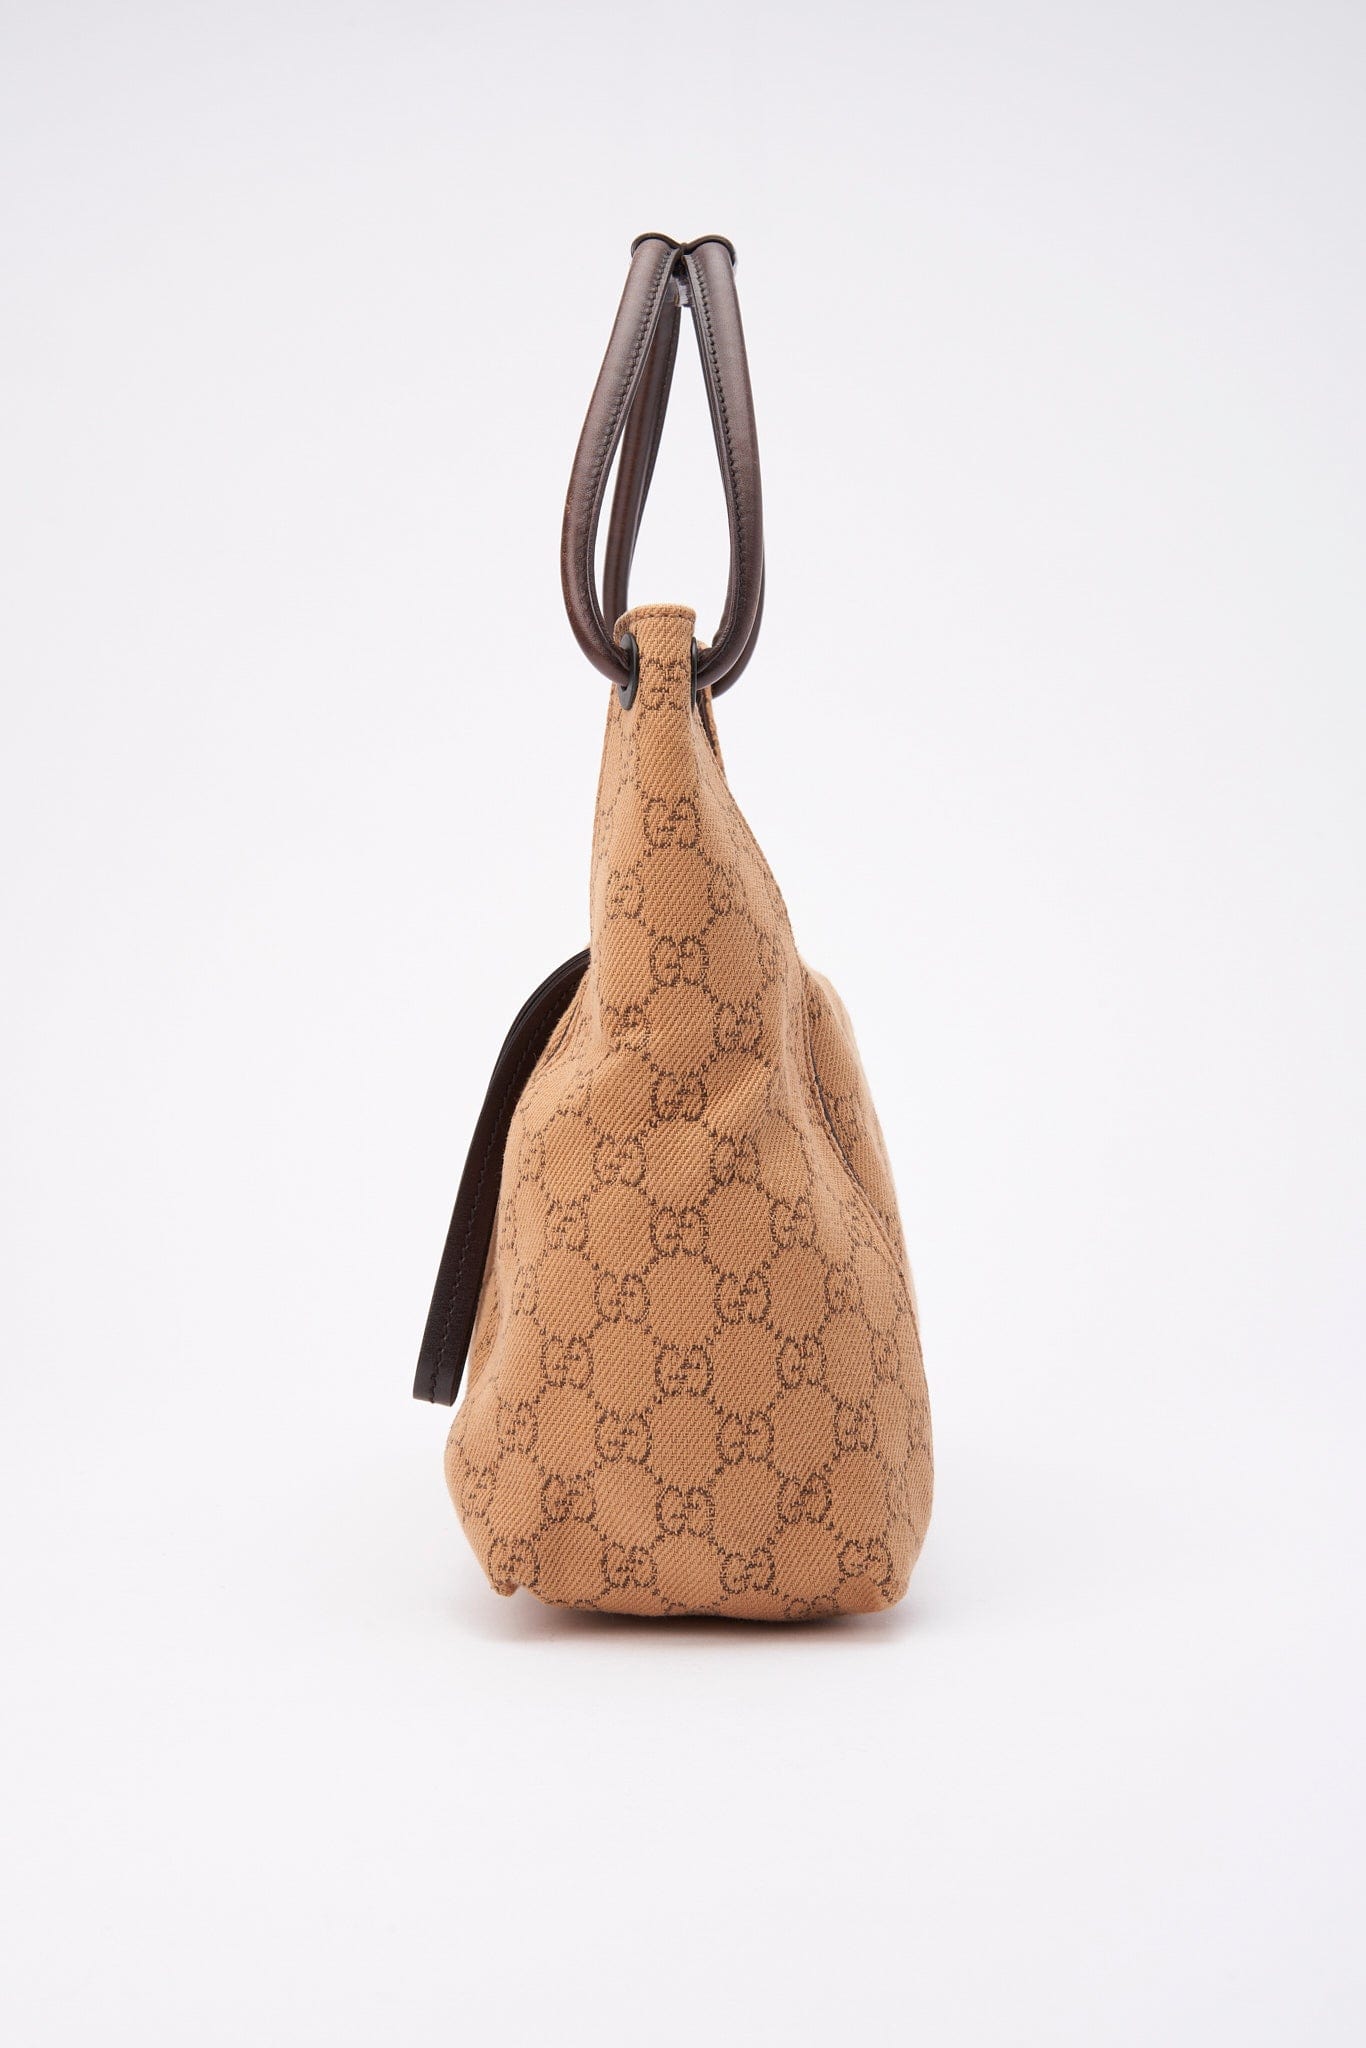 Vintage Gucci Beige Canvas Shoulder Bag